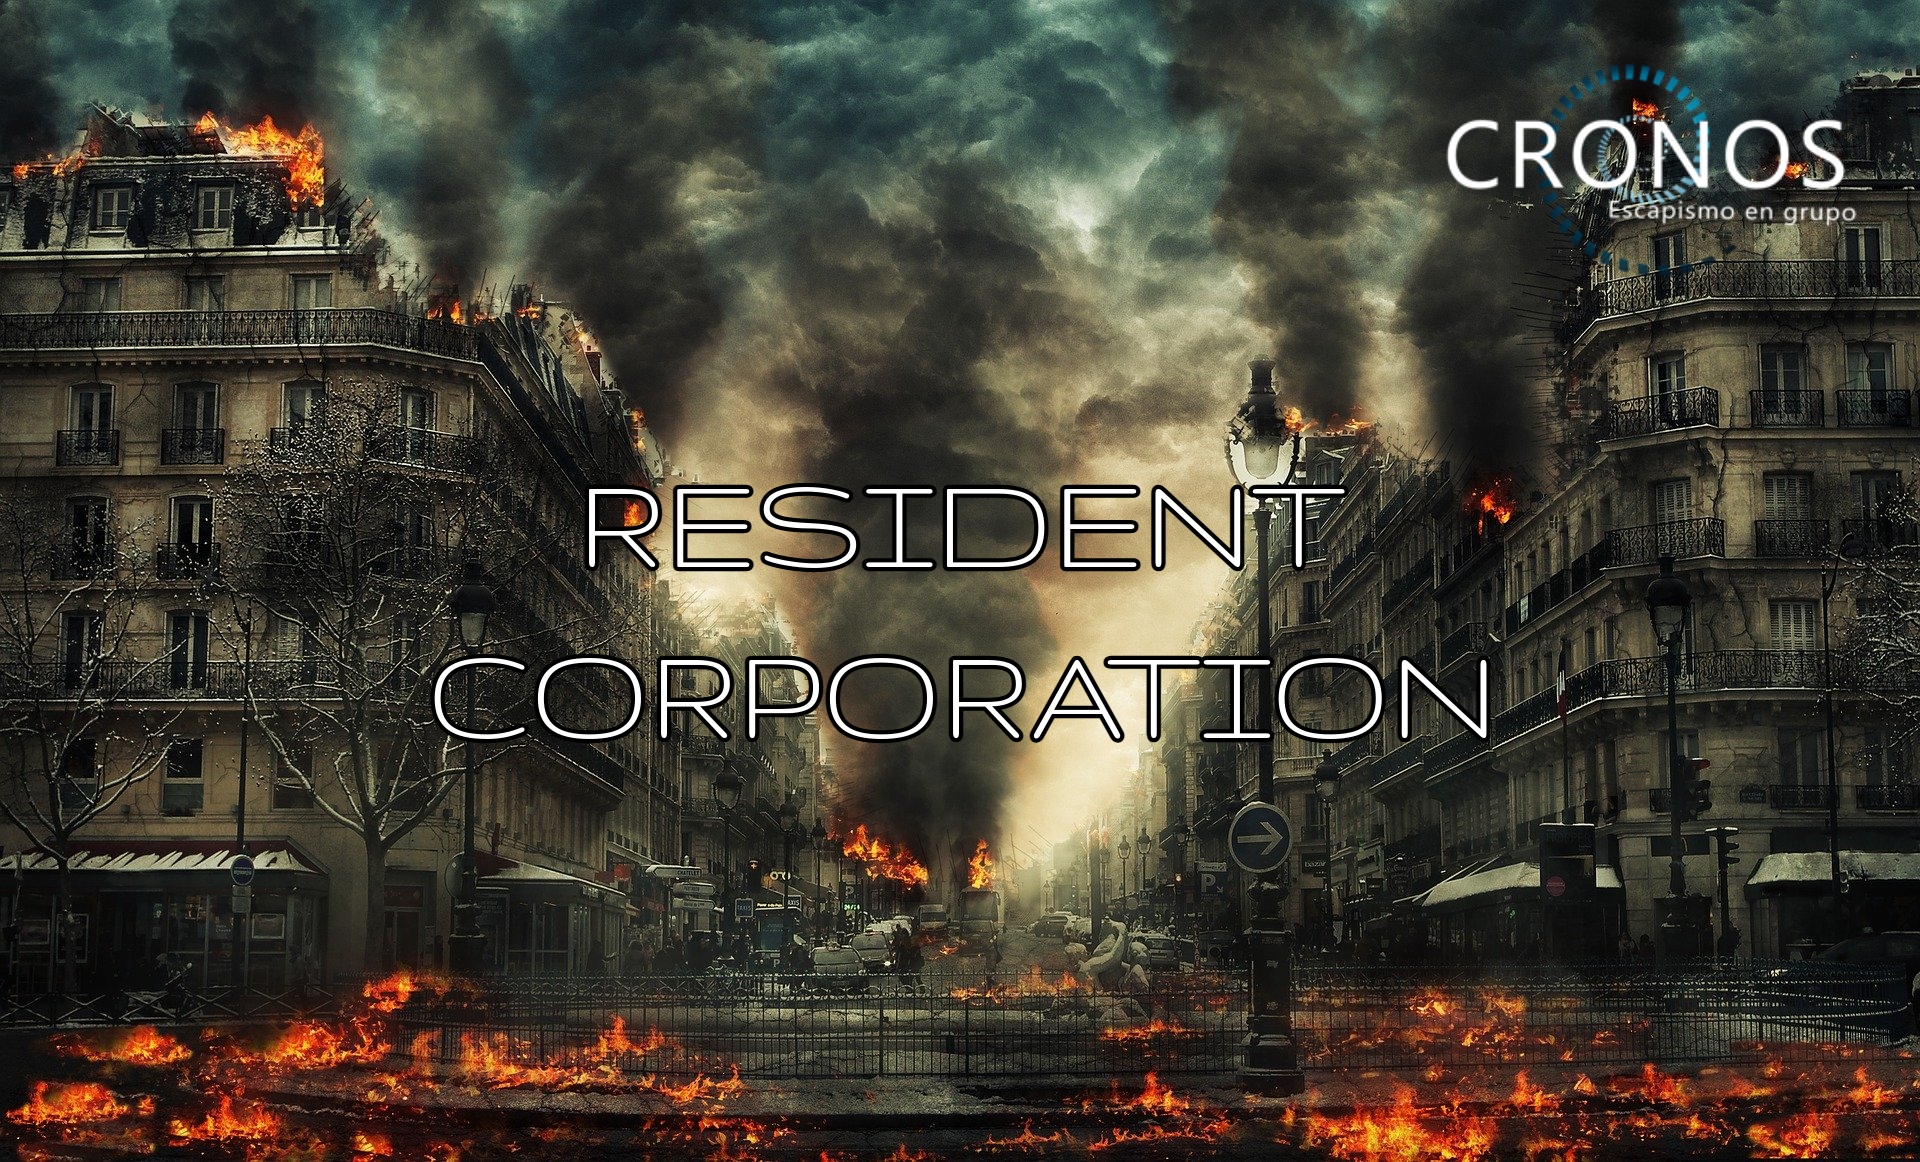 Resident Corporation - Cronos (Valencia) - Review Escape Room